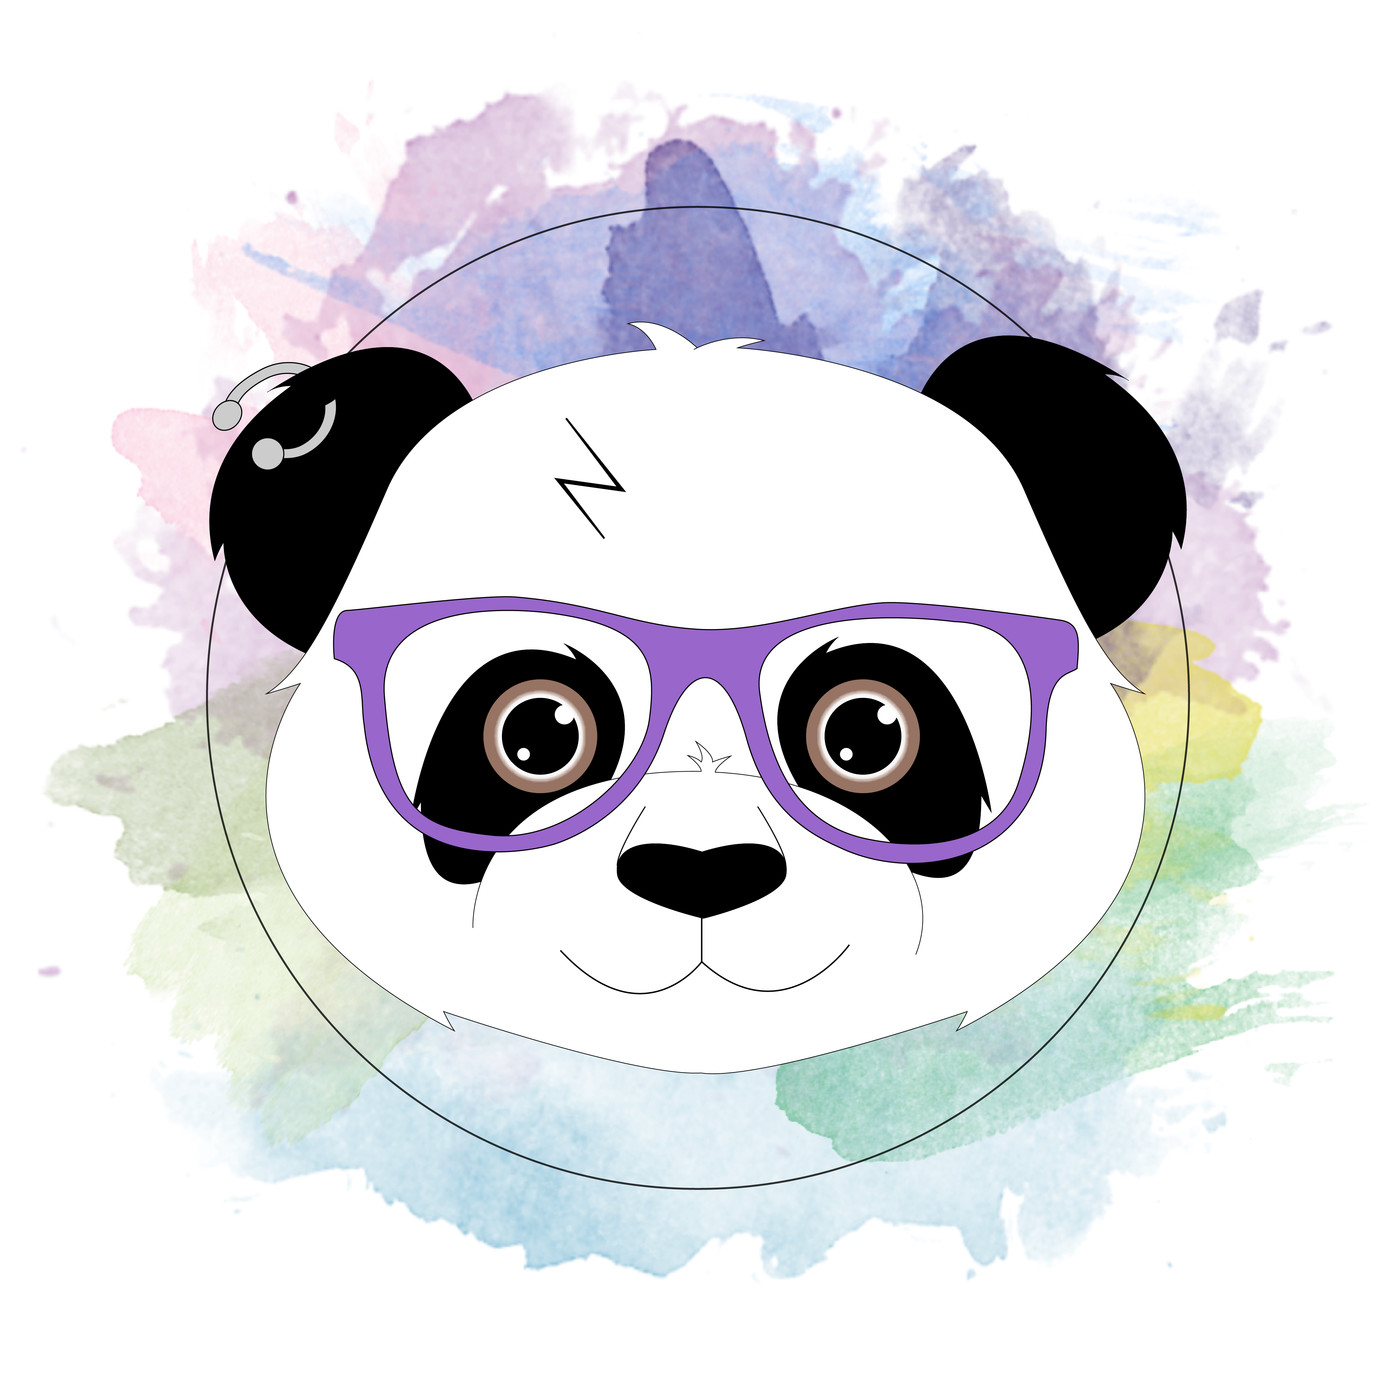 Di Pandas' s01e04 'New Girl'